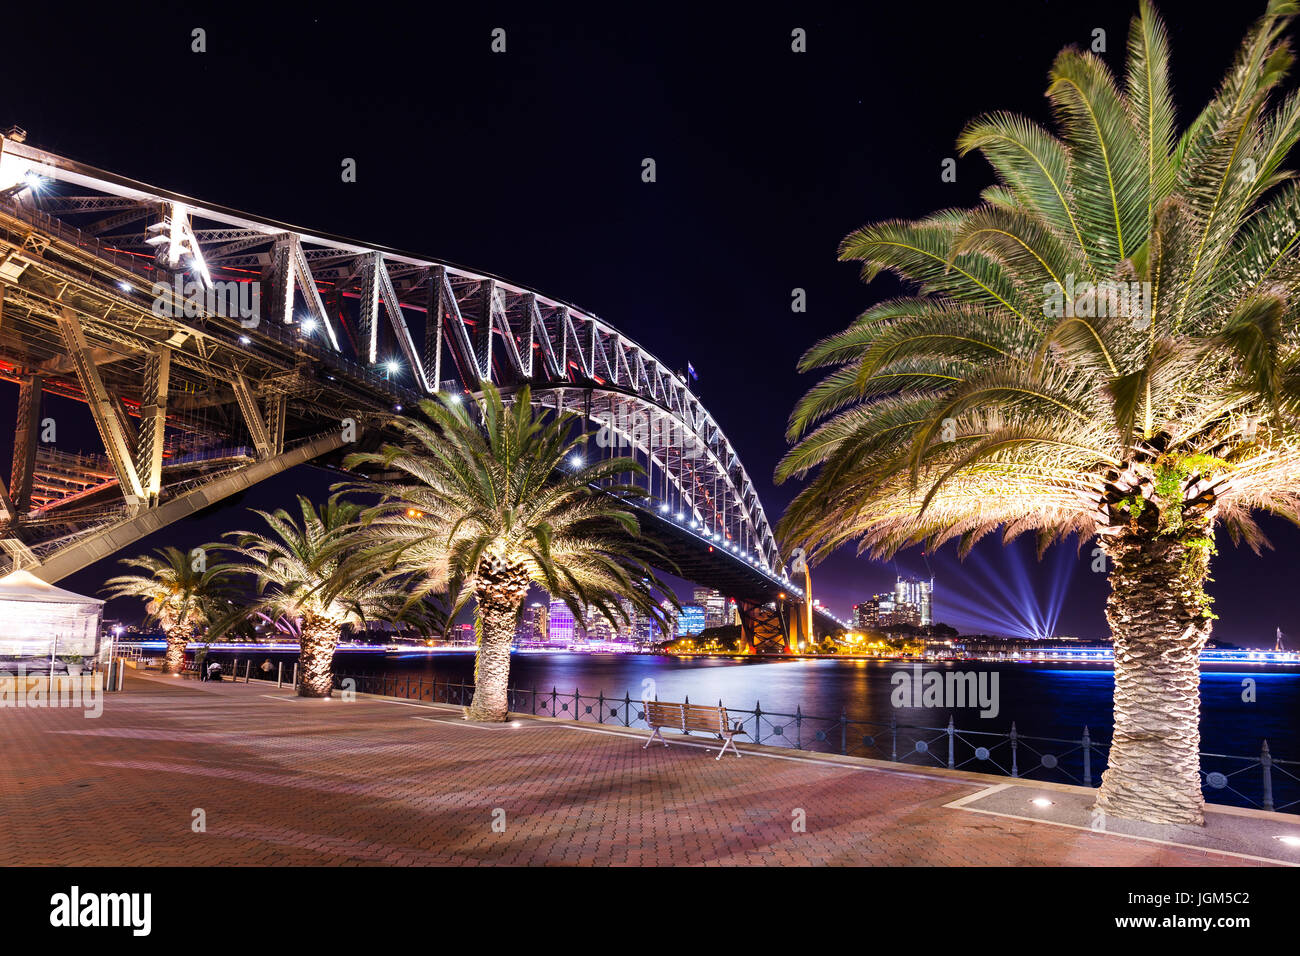 Sydney Harbour beleuchtet während während der @vividsydney im Jahr 2016. Wenn Sie während des Festivals gibt es in gehen Sie diesem Jahr und schauen Sie sich die Gebäude in der Stadt- Stockfoto